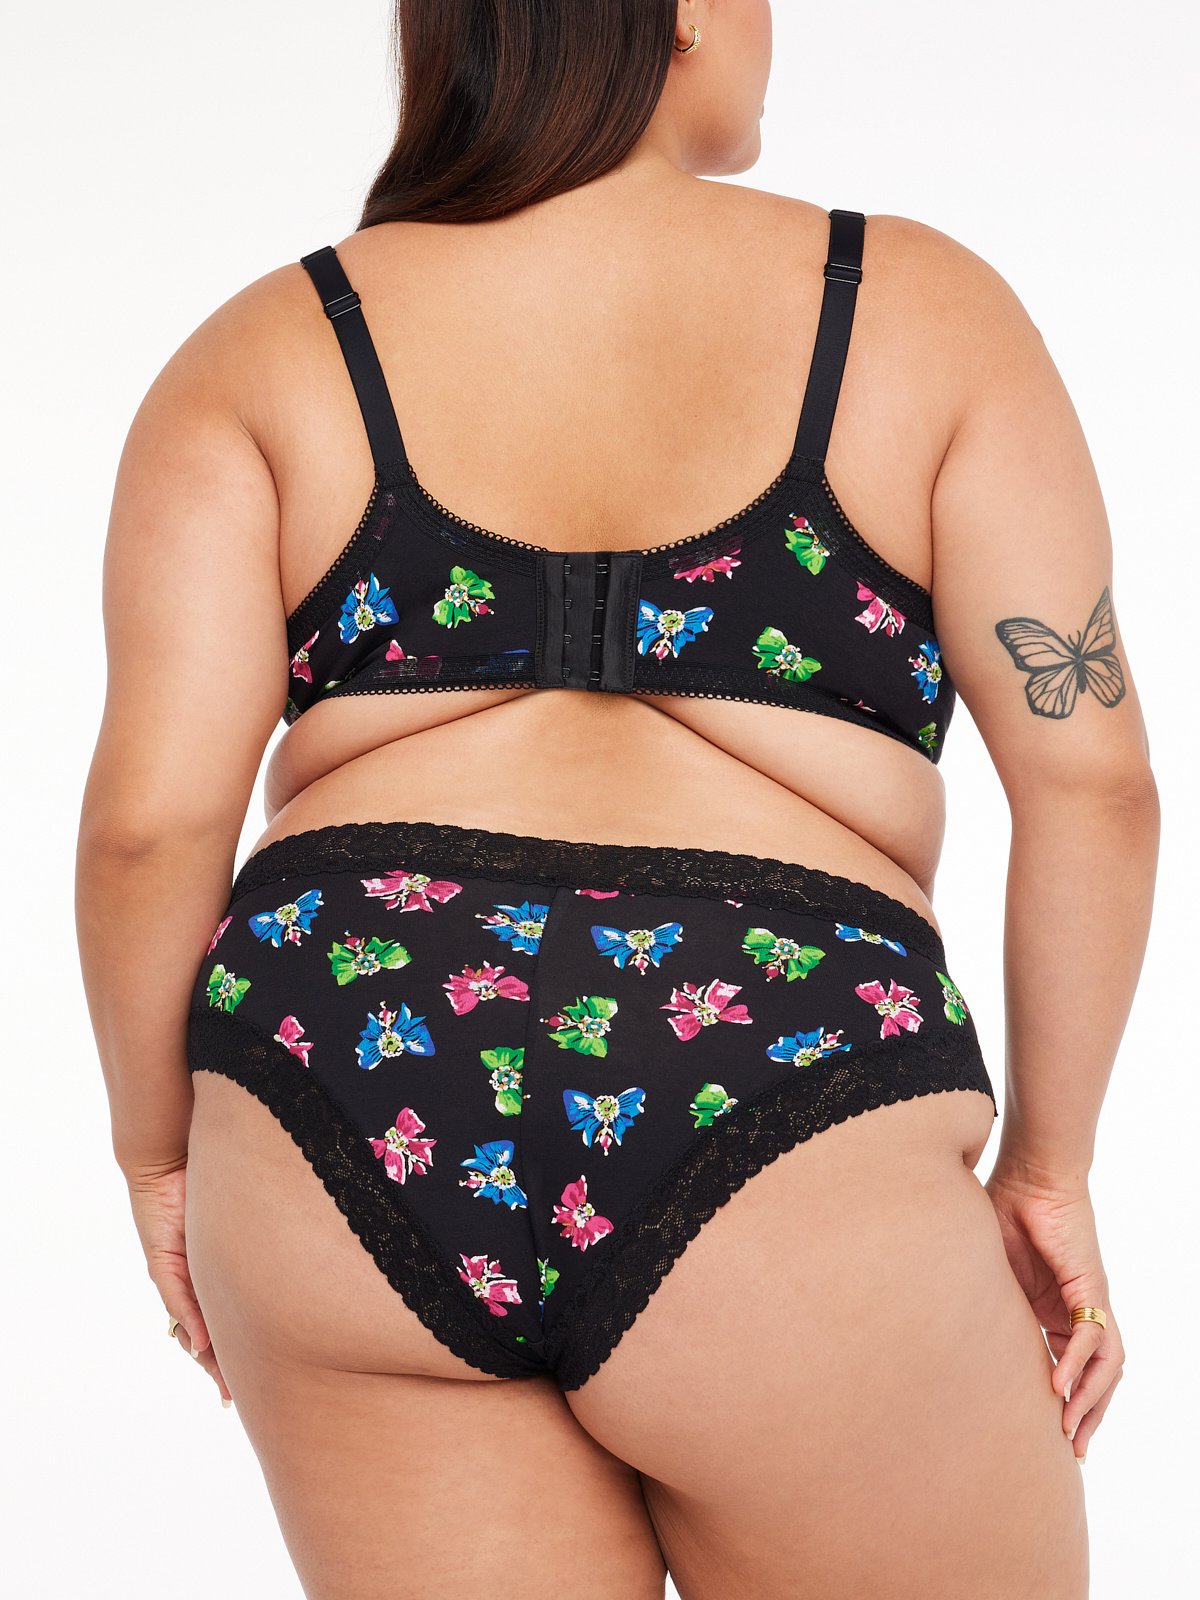 Cheeky Briefs Butterfly Girl, Butterfly Underwear, Womens